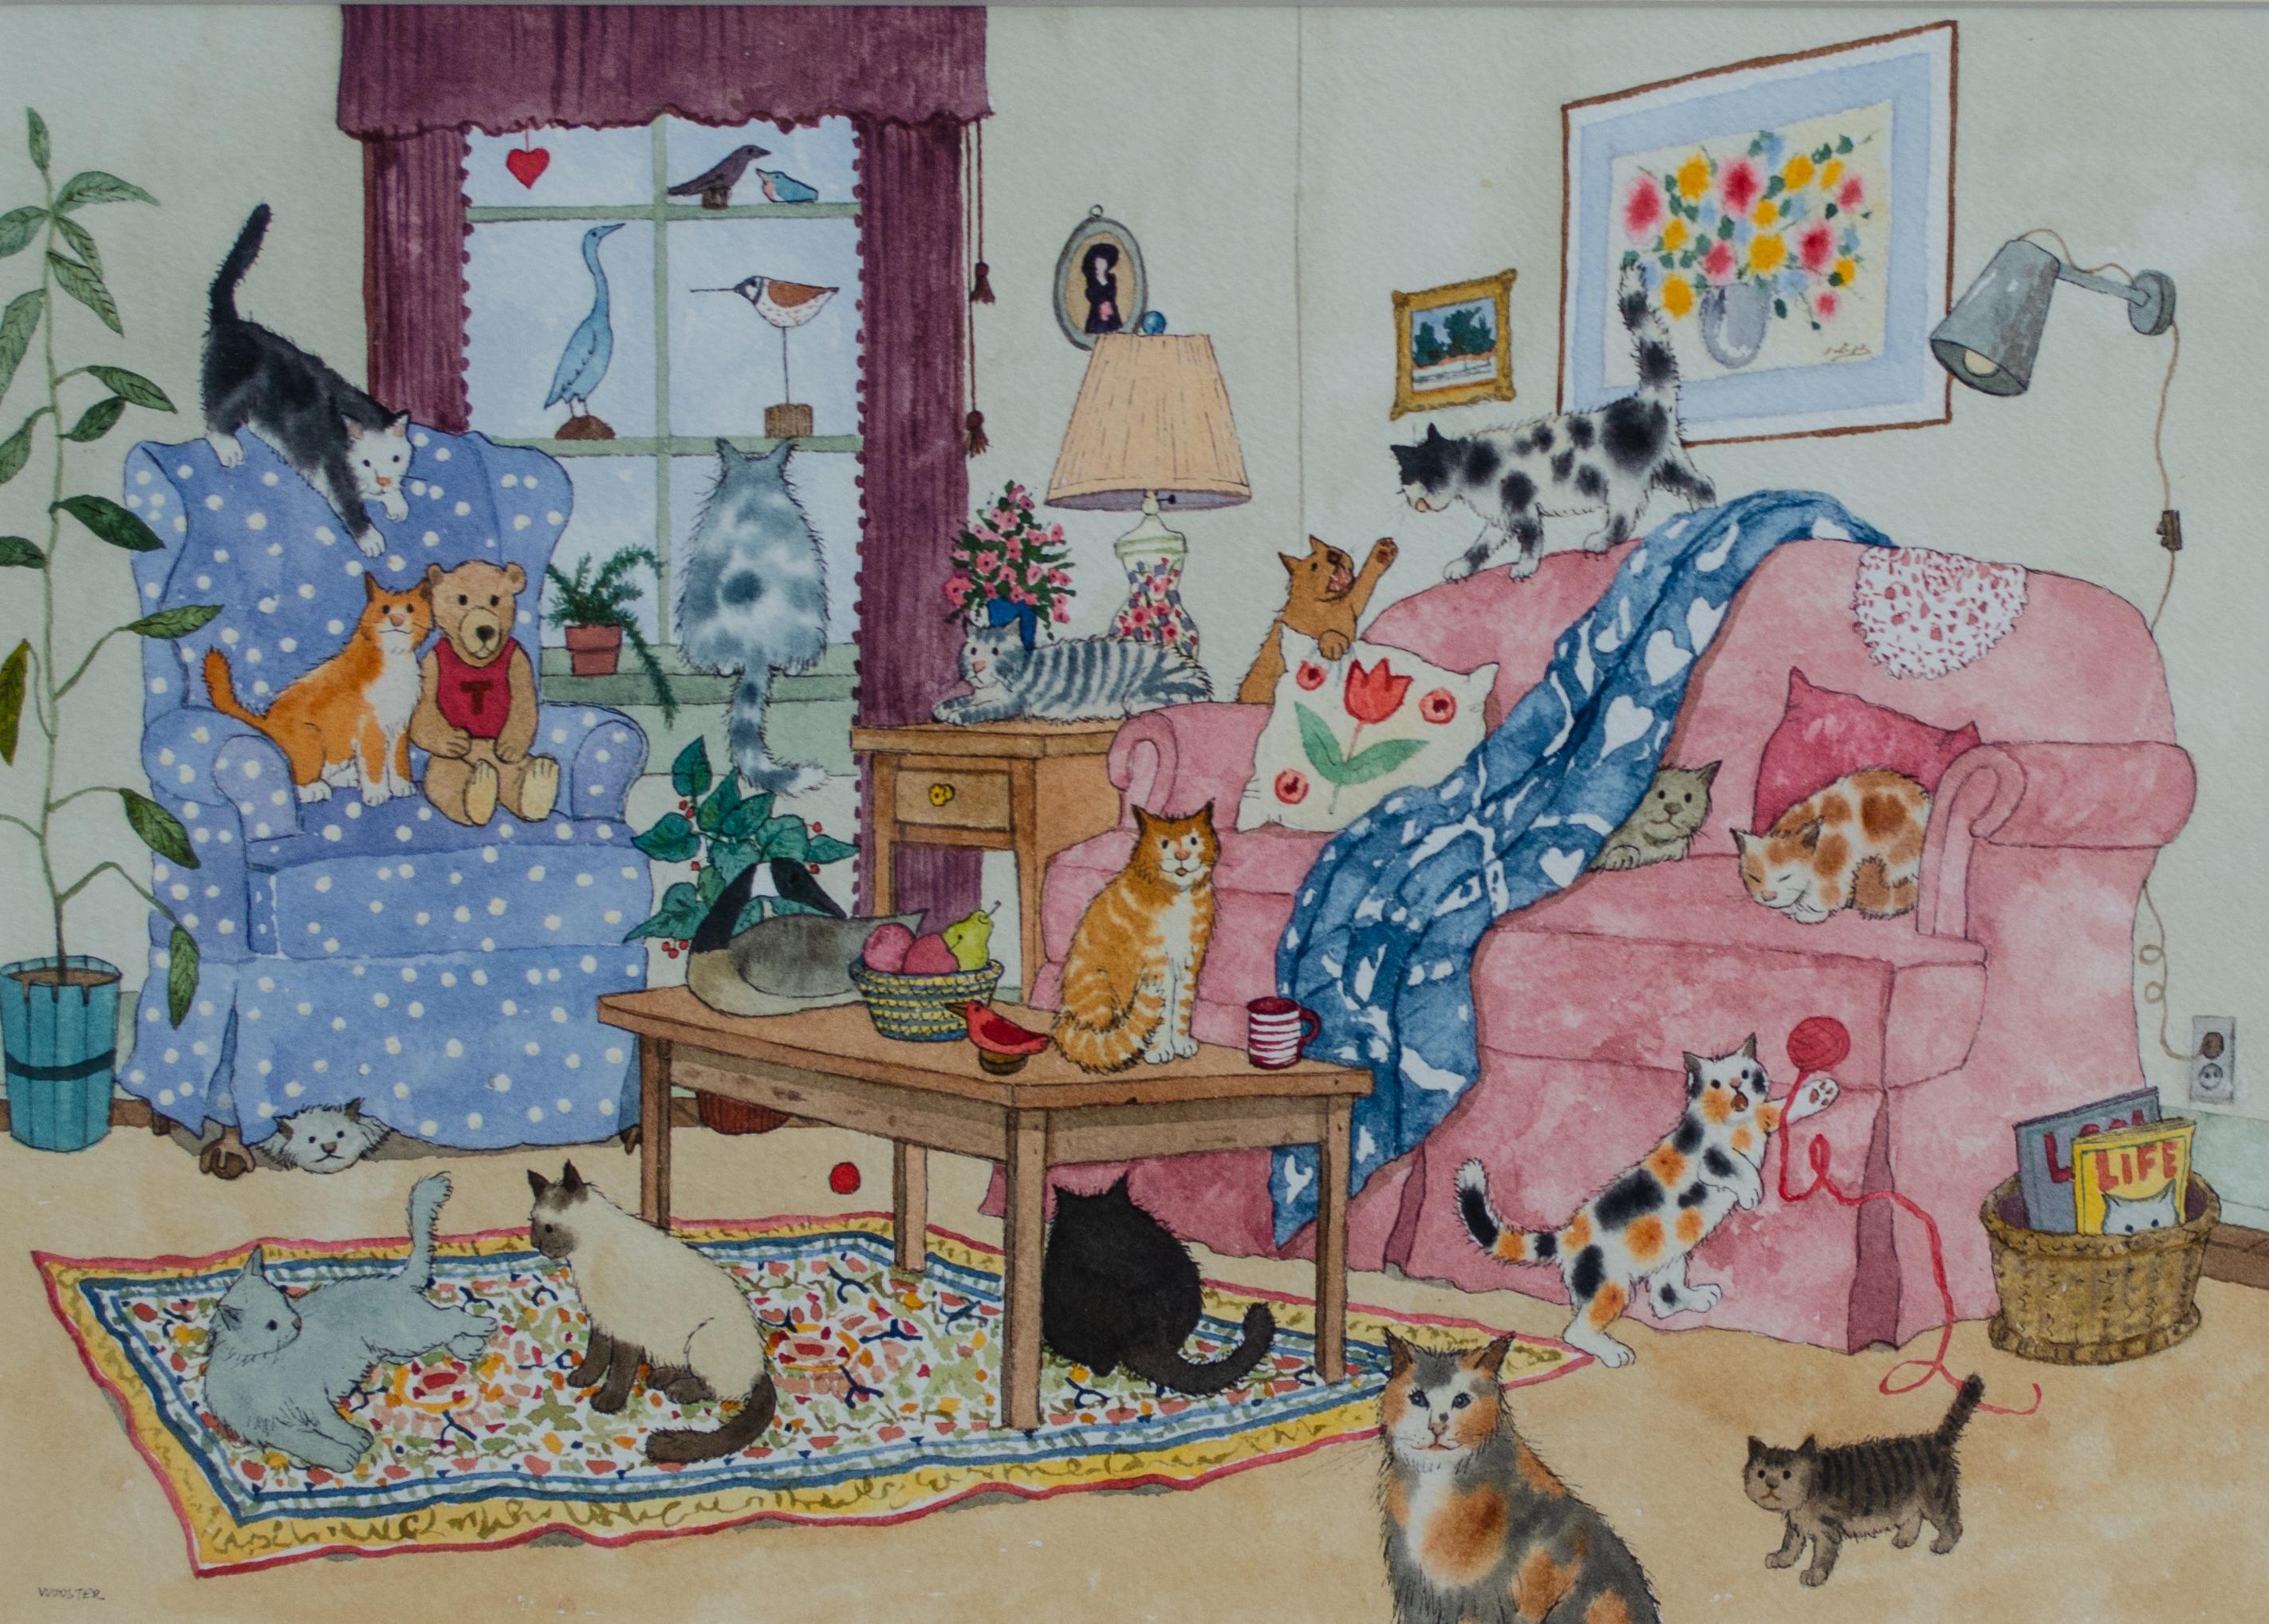 Jane Wooster Scott (américaine, née en 1920)
Sans titre (maison de chat), 20e siècle
Aquarelle sur papier
Taille de la vue : 10 x 14 in.
Encadré : 17 x 20 3/4 in.
Signé en bas à gauche : Wooster

Figurant dans le "Livre Guinness des records" comme